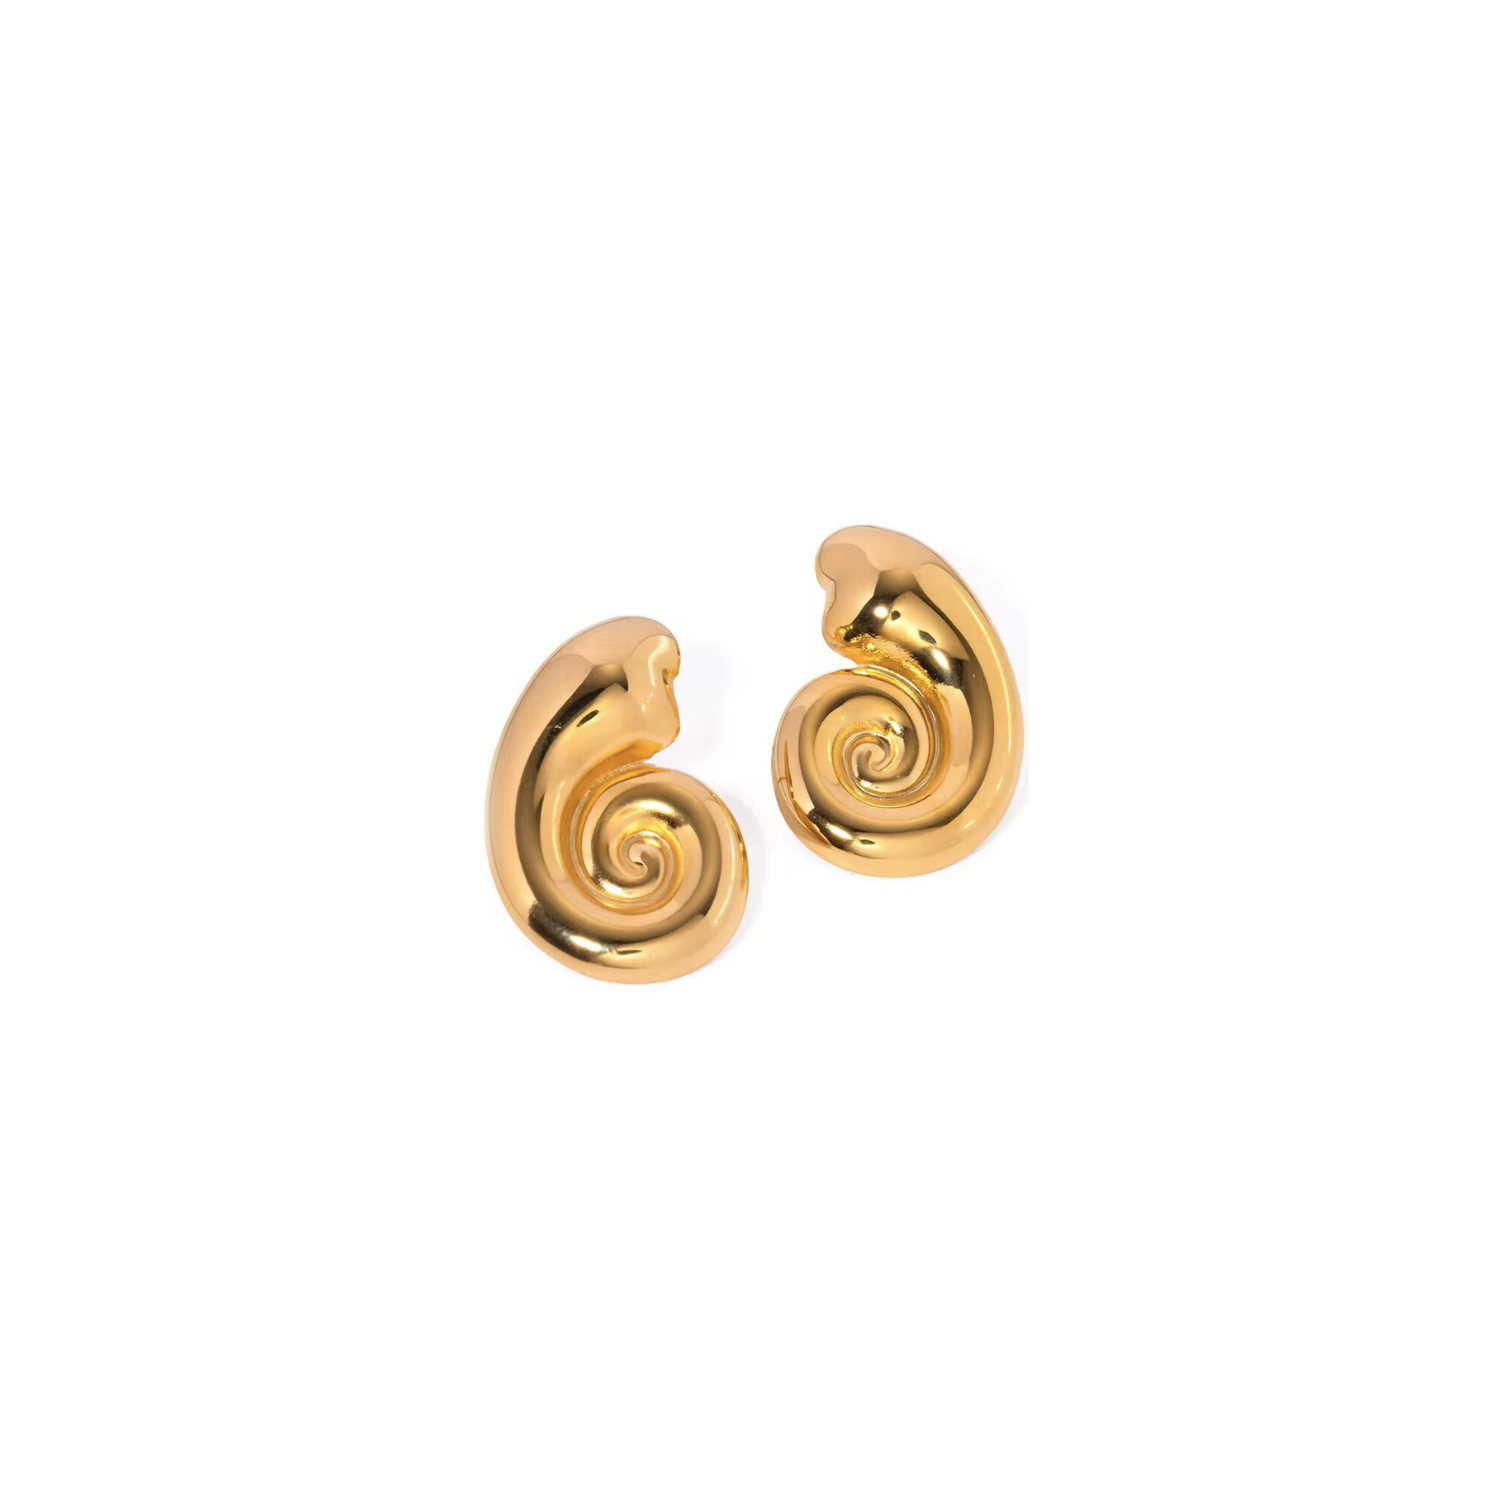 swirl earrings, gold earrings, statement earrings